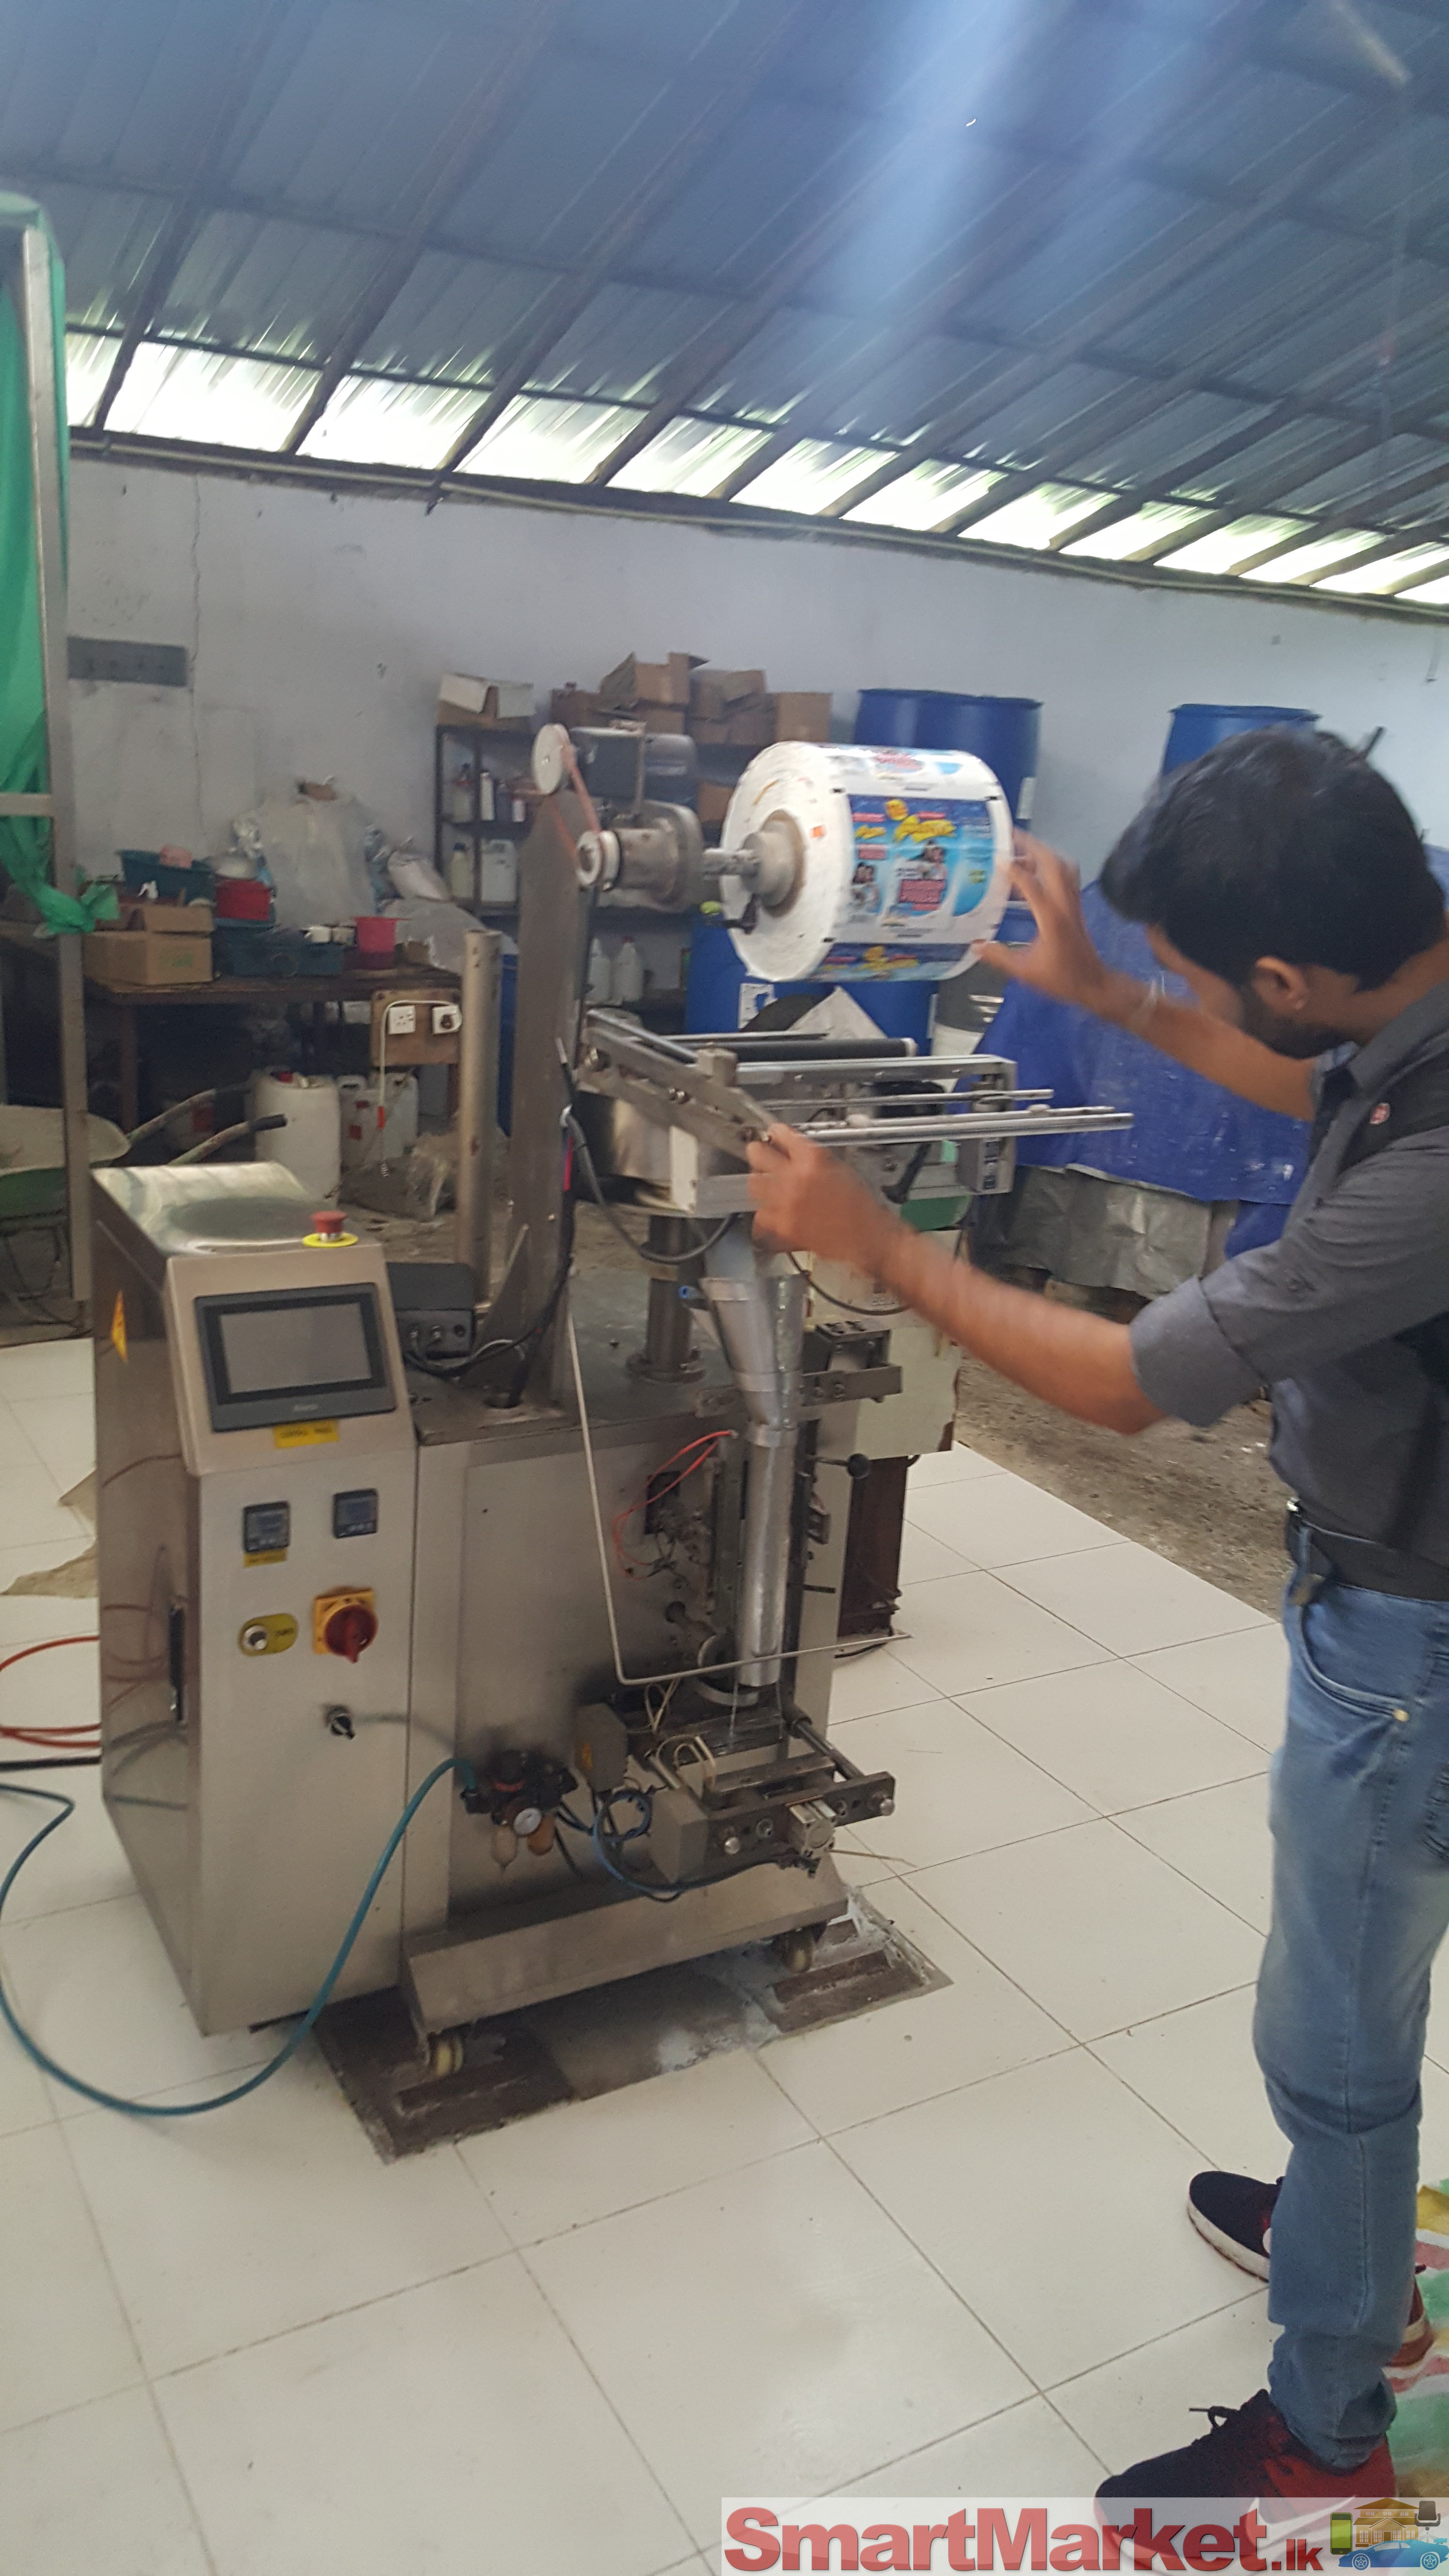 Factory machine repairs, PLC, VFD